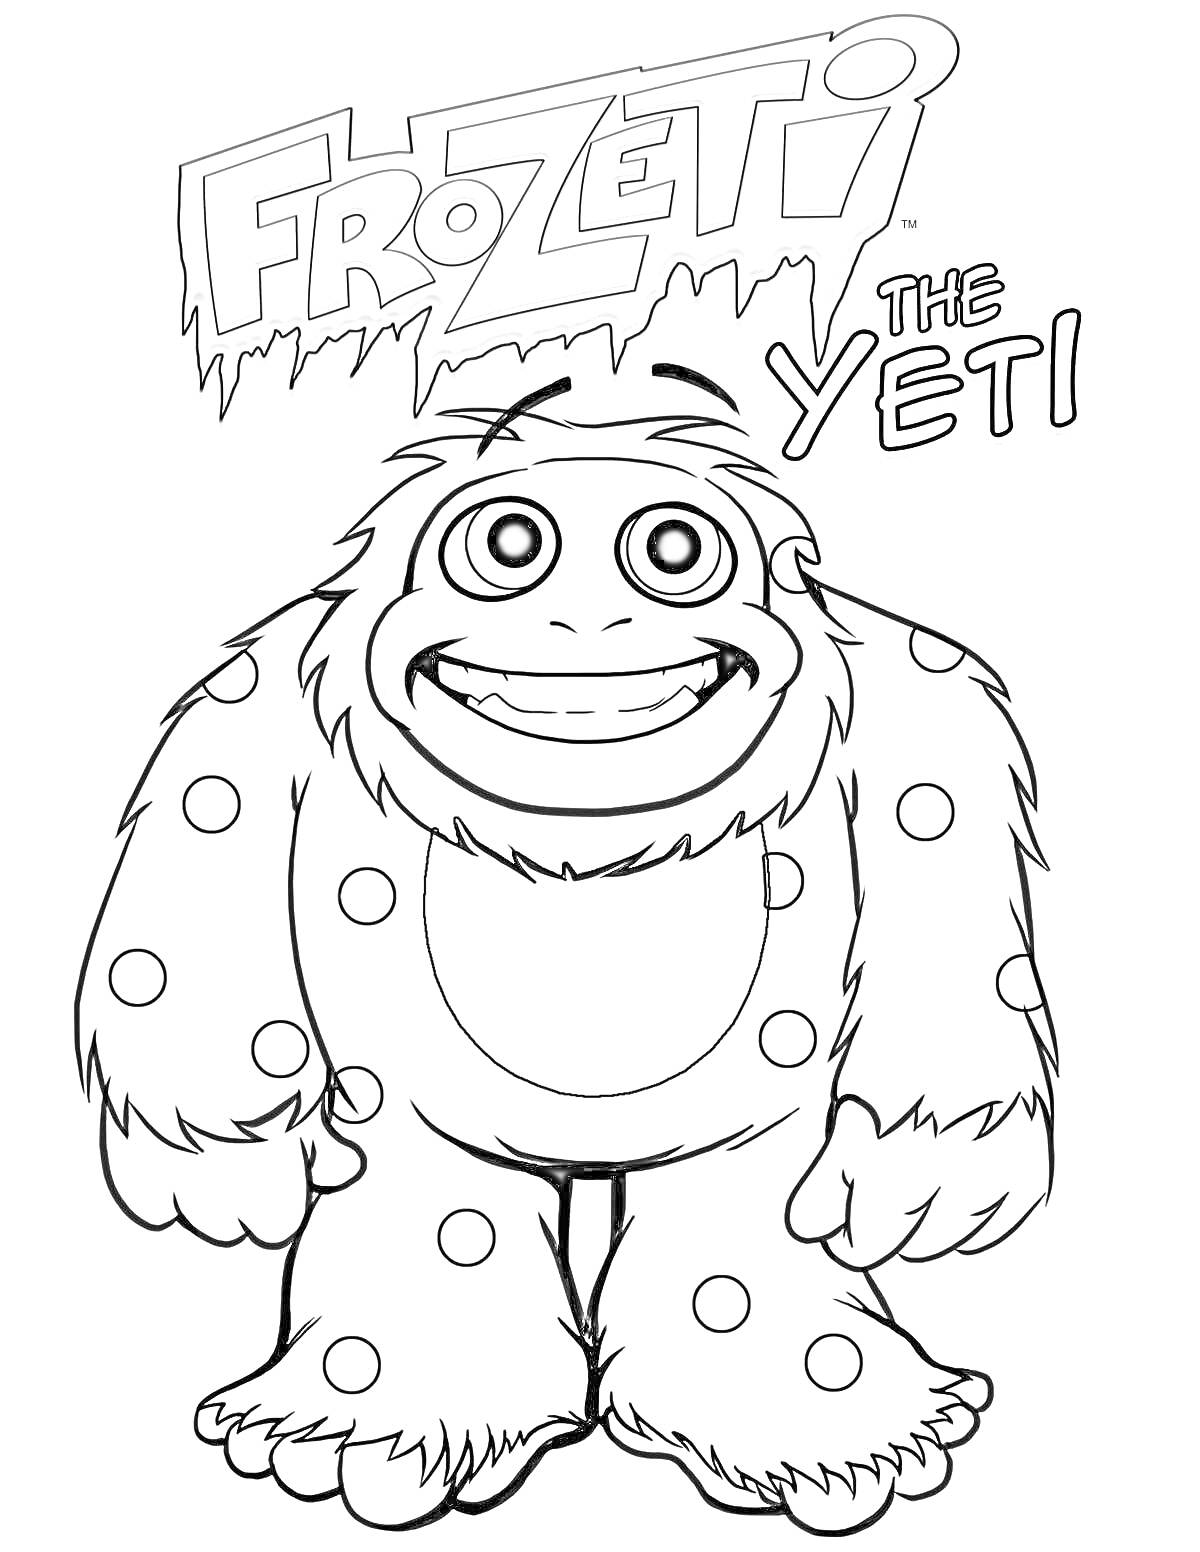 Раскраска Frozeti the Yeti, йети в пятнах, улыбающийся йети